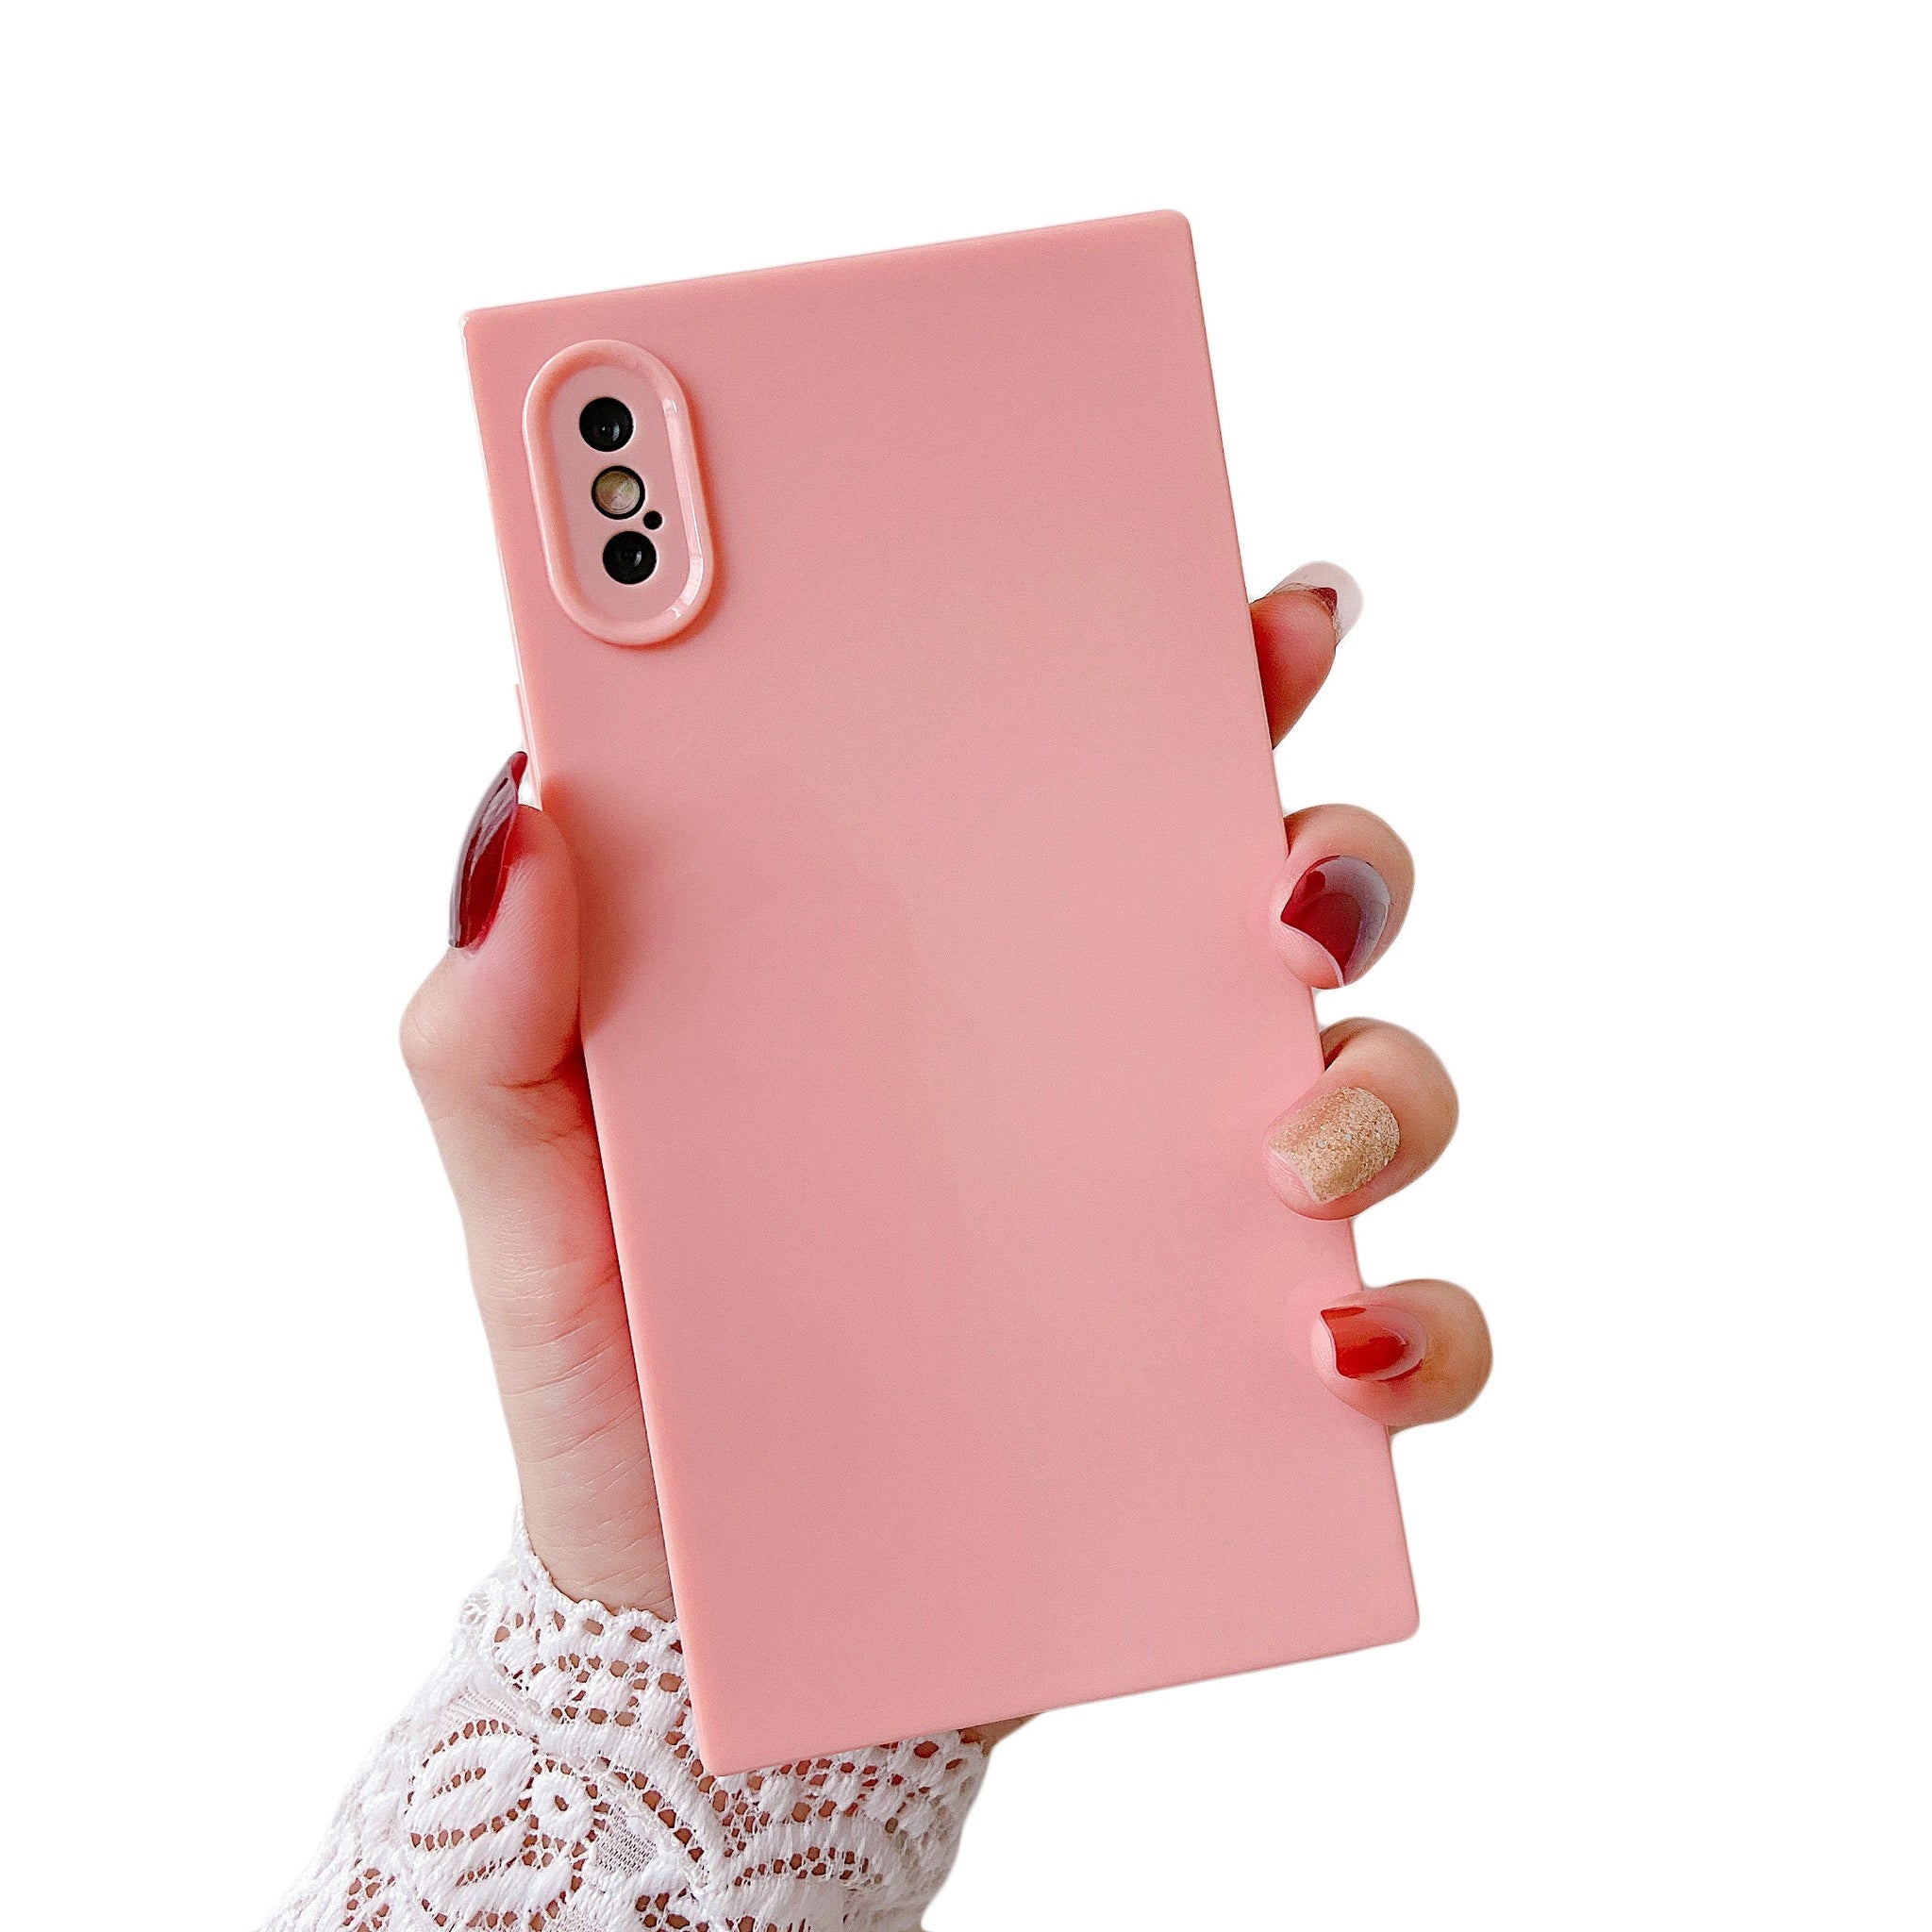 iPhone XR Case Square Plain Color (Pink)